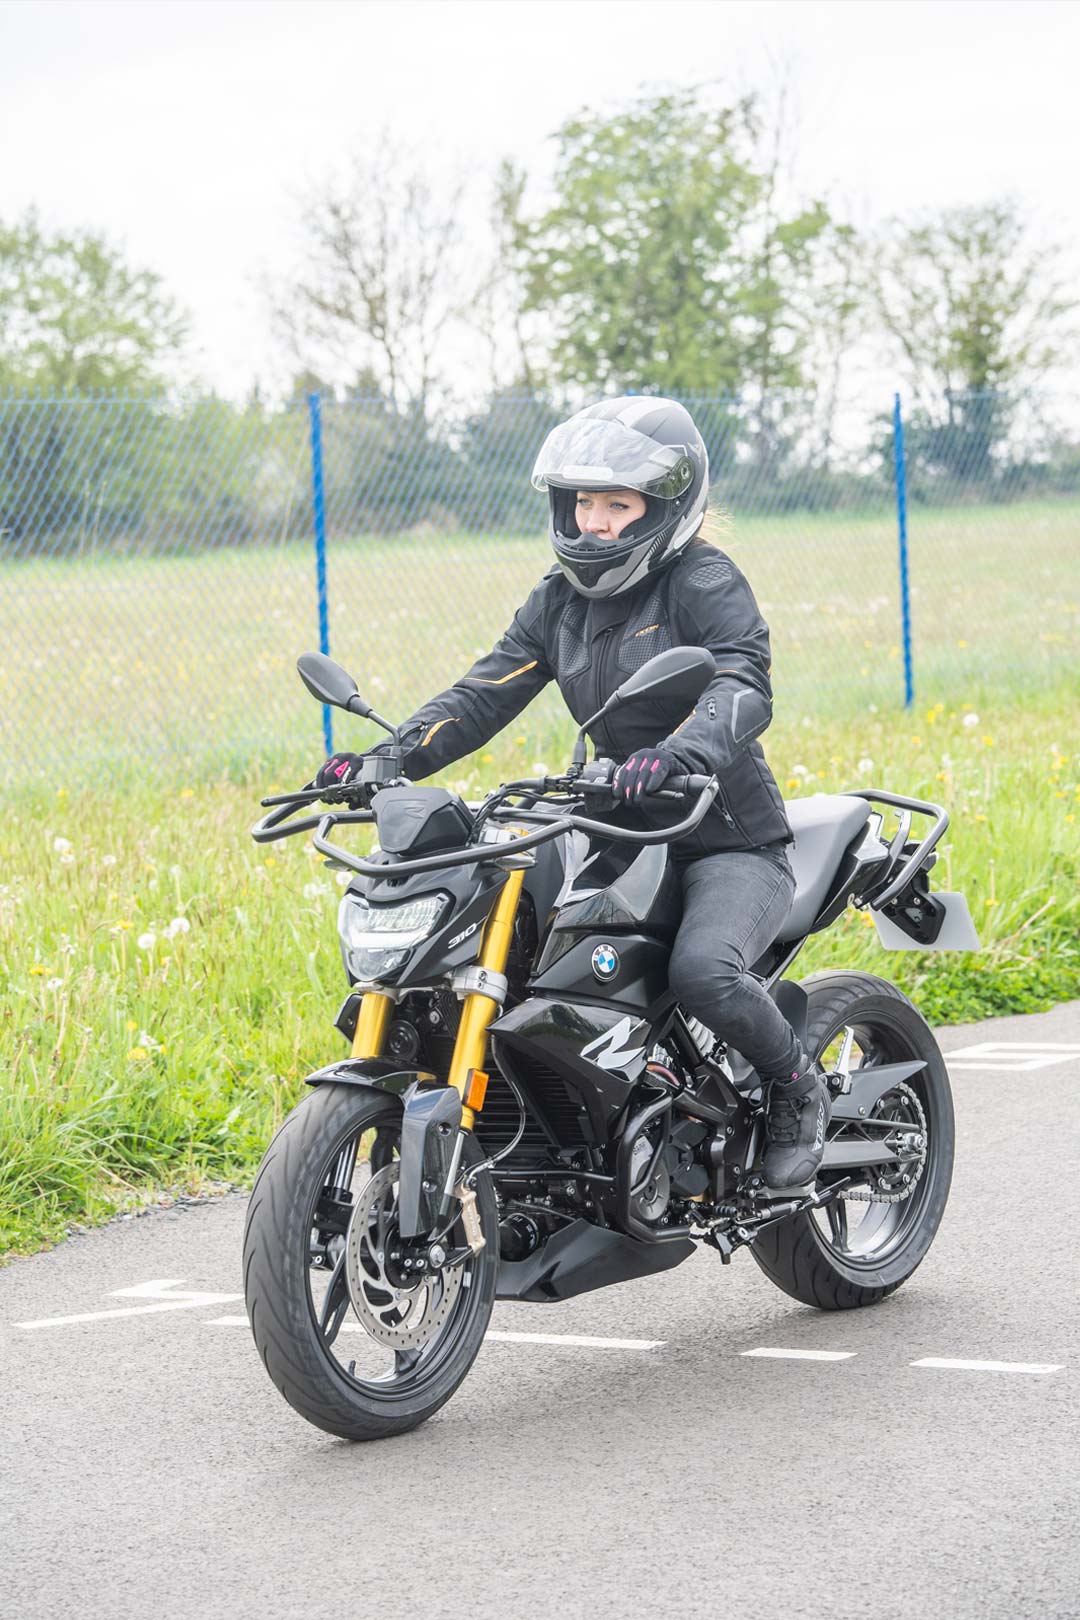 Permis A2 moto - Viking Auto-école